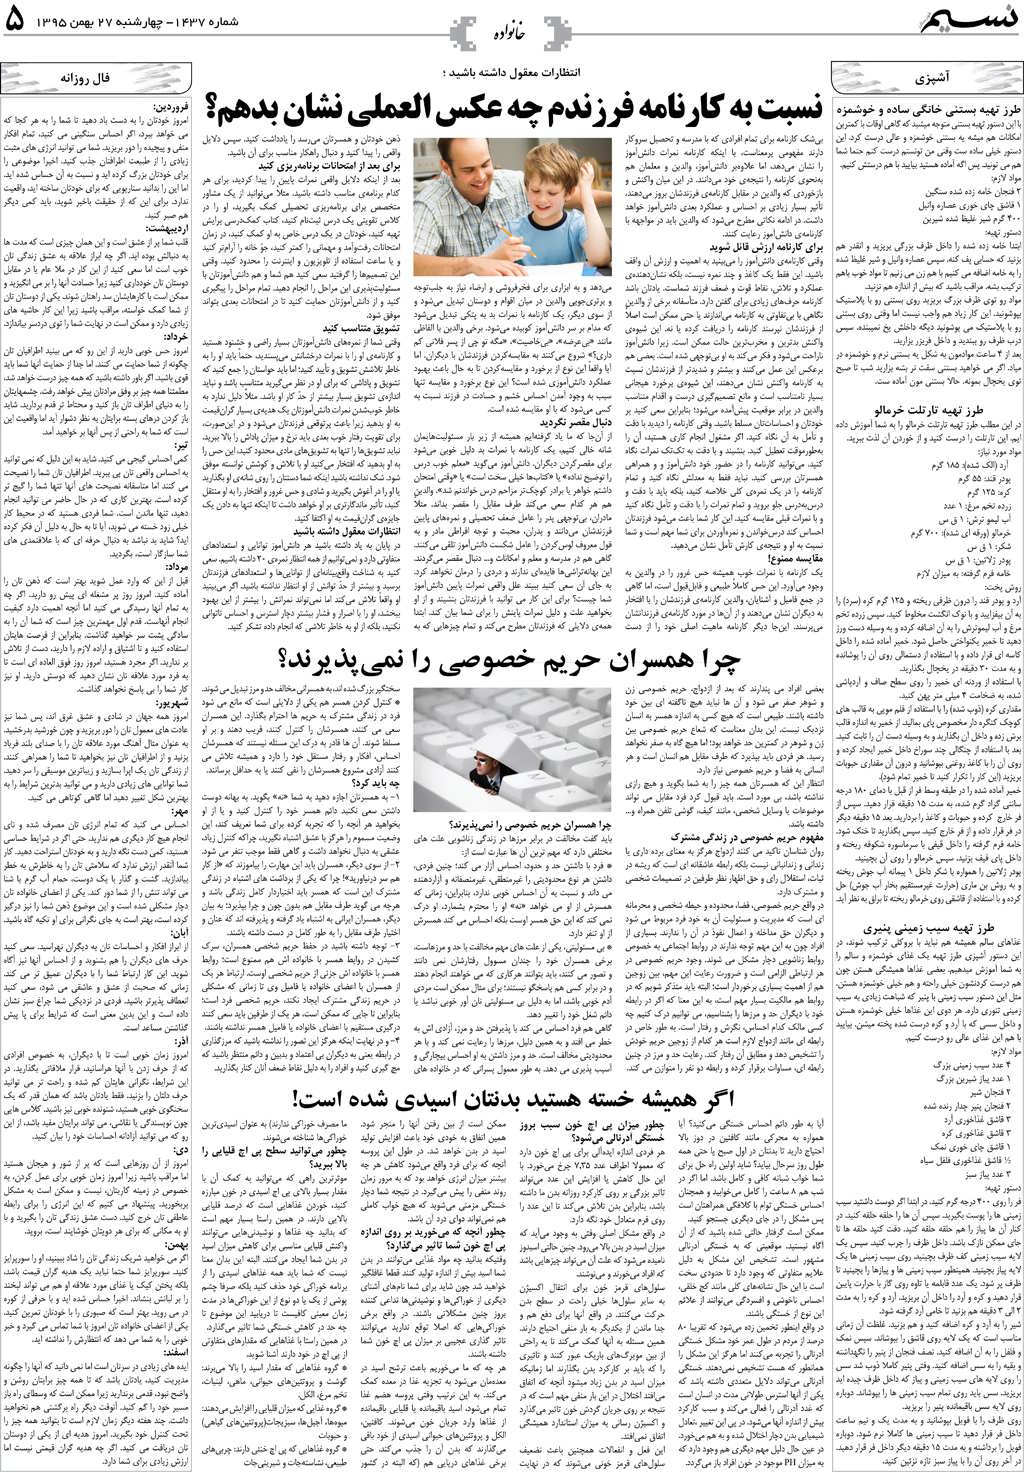 صفحه خانواده روزنامه نسیم شماره 1437